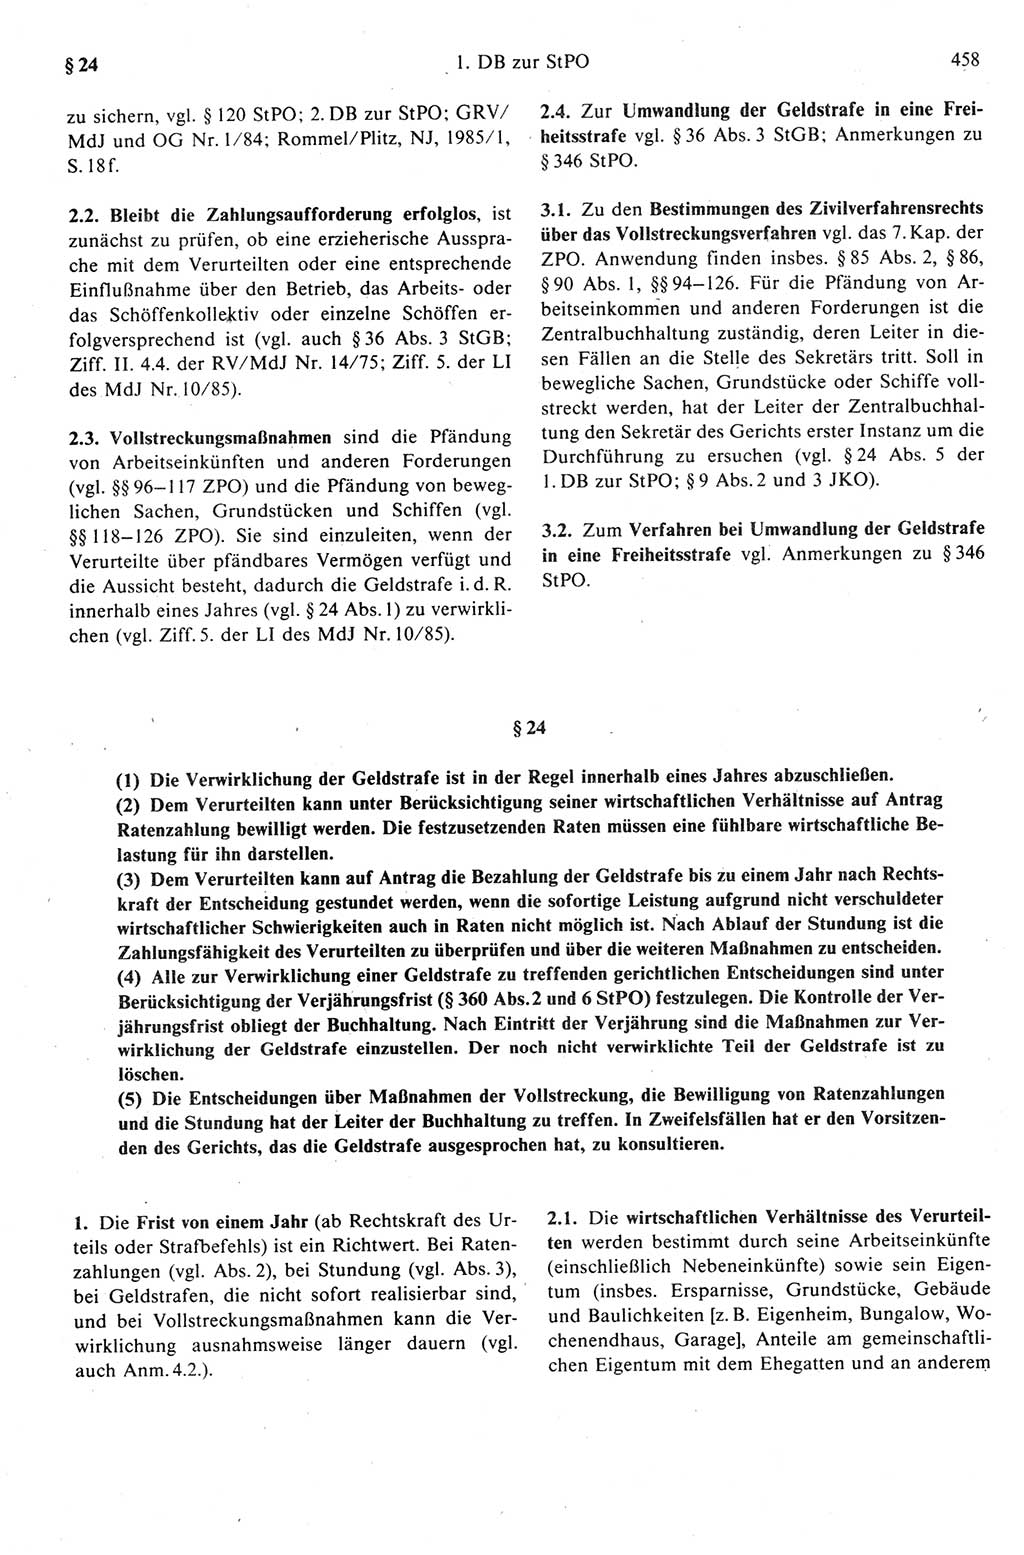 Strafprozeßrecht der DDR (Deutsche Demokratische Republik), Kommentar zur Strafprozeßordnung (StPO) 1989, Seite 458 (Strafprozeßr. DDR Komm. StPO 1989, S. 458)